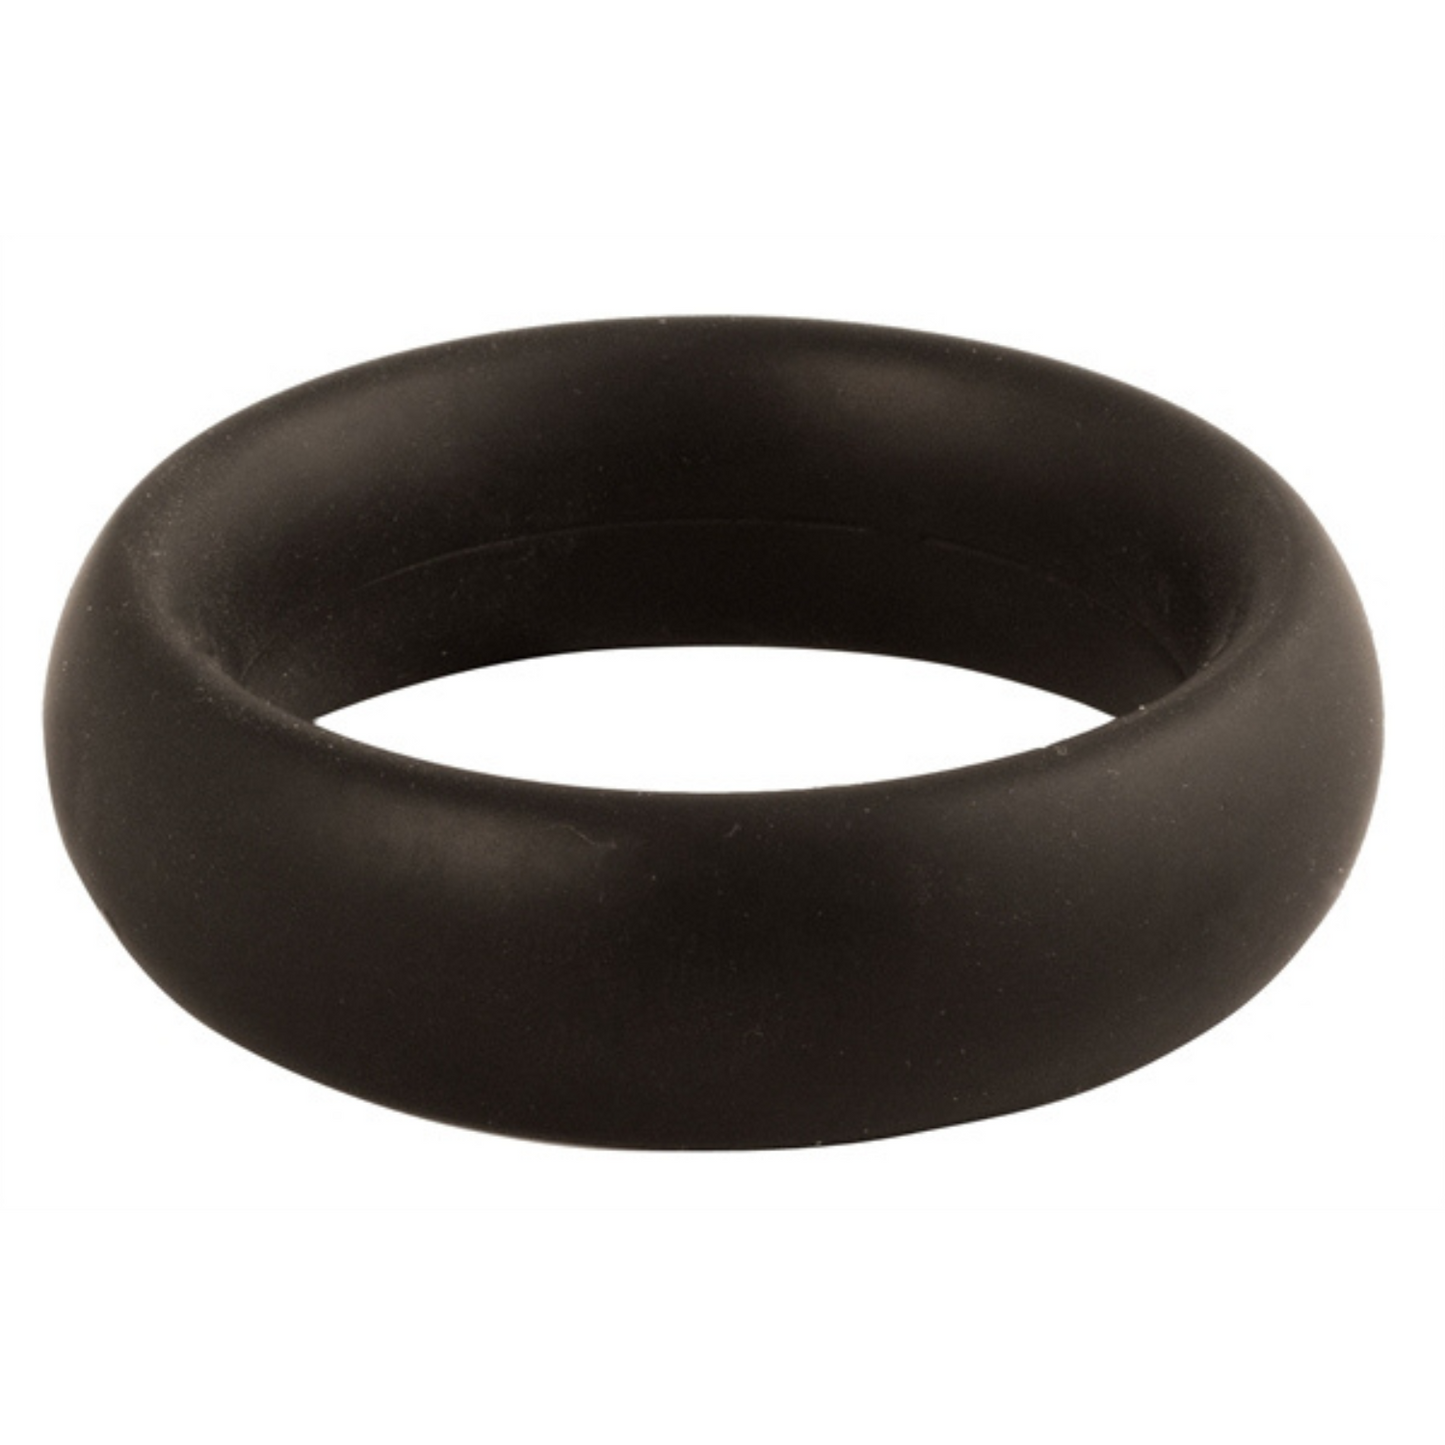 Zwarte donut cockring met een diameter van 50 mm. Ontworpen door Mister B voor gay mannen en te koop bij Flavourez.